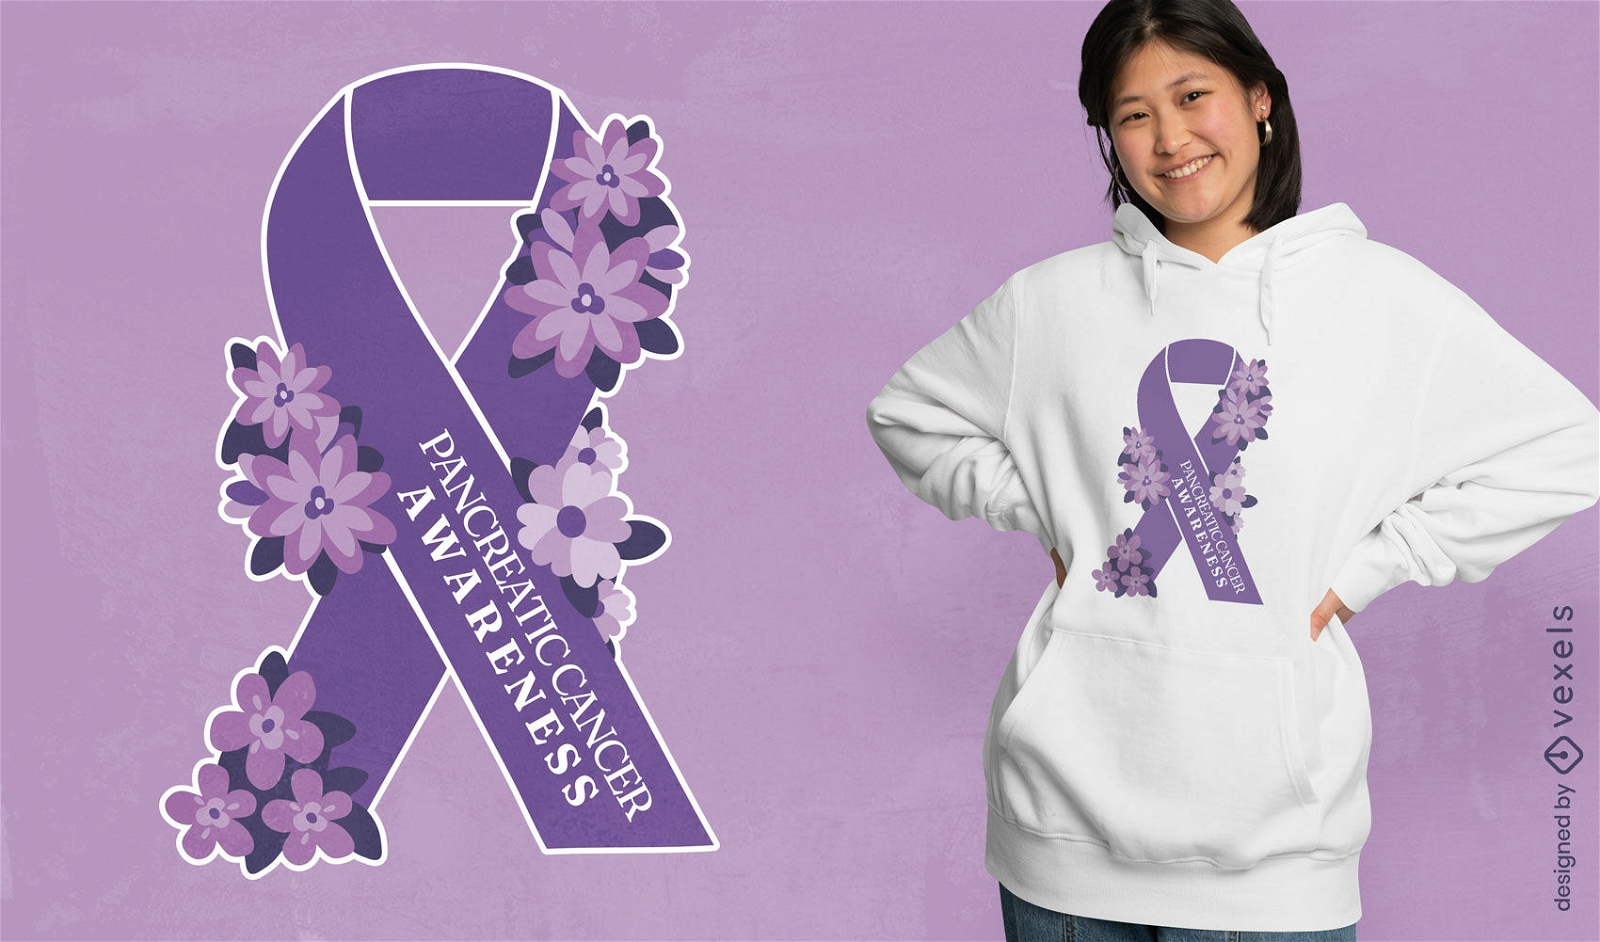 Pancreatic cancer awareness t-shirt design